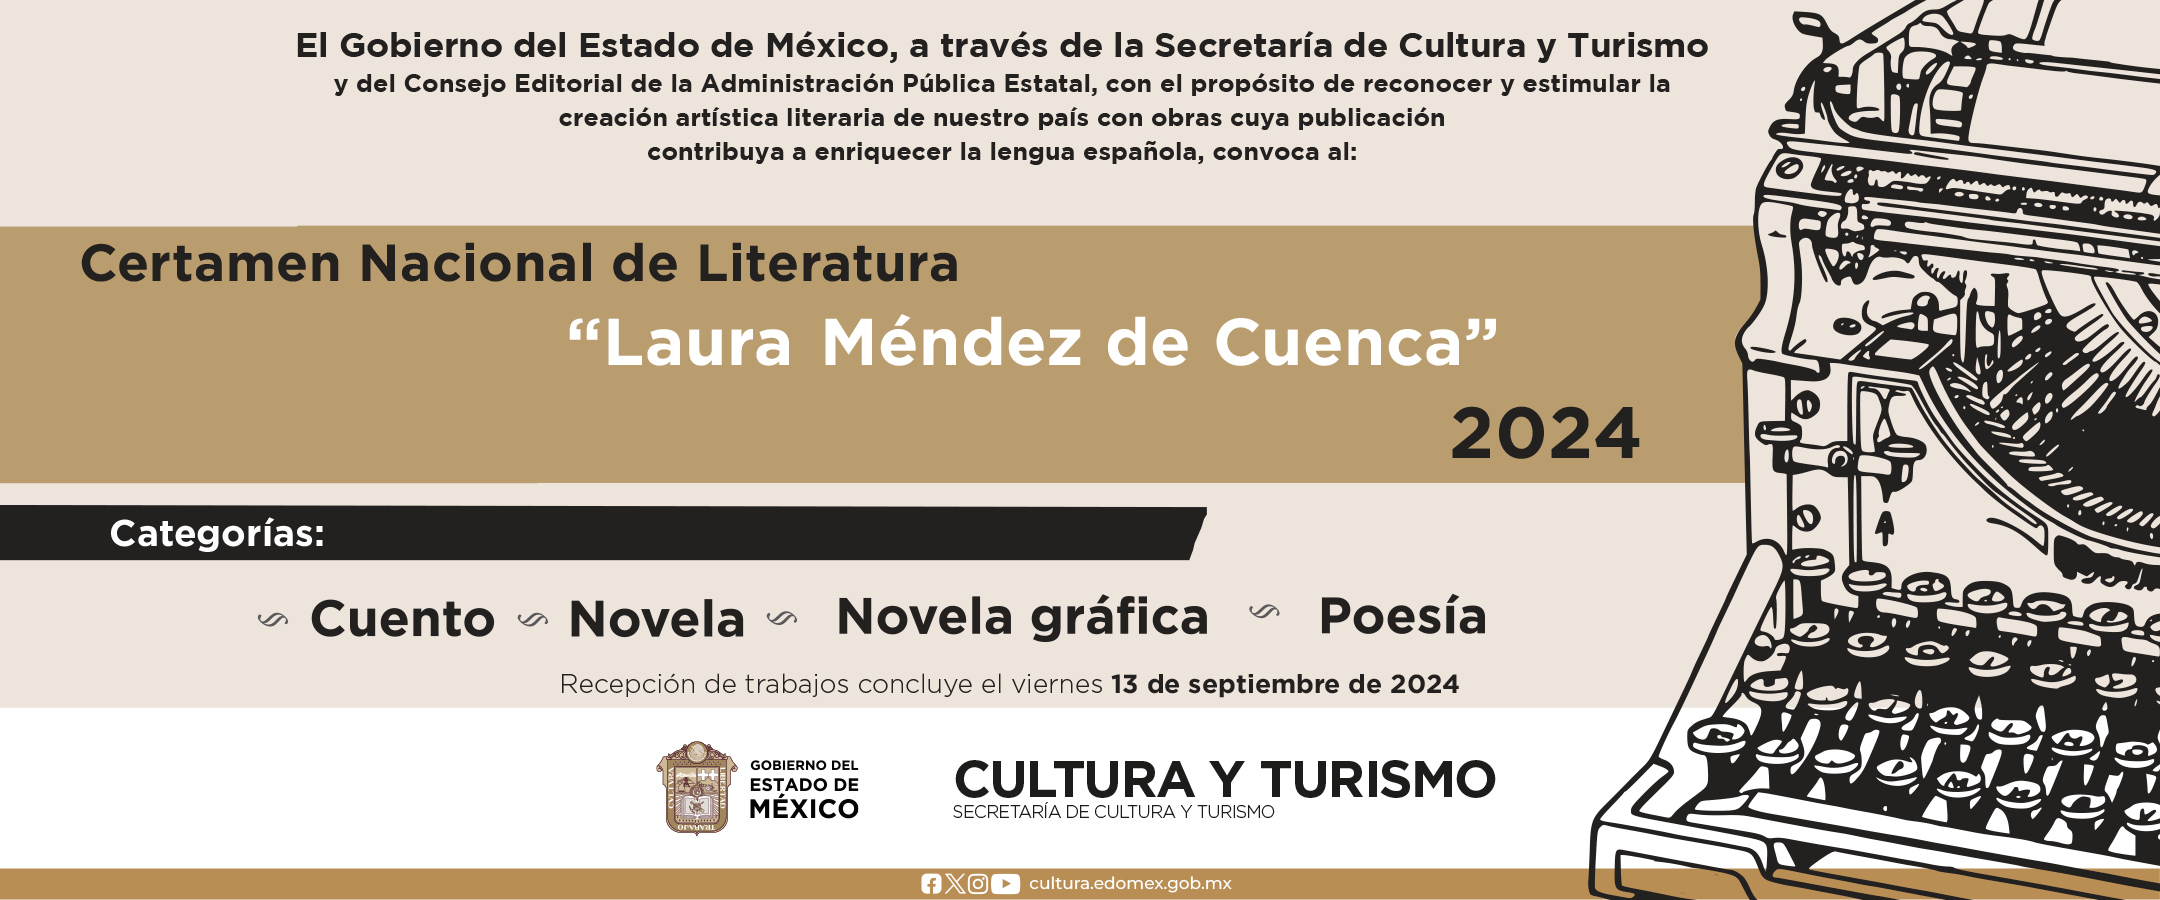 Certamen Nacional de Literatura “Laura Méndez de Cuenca” 2024